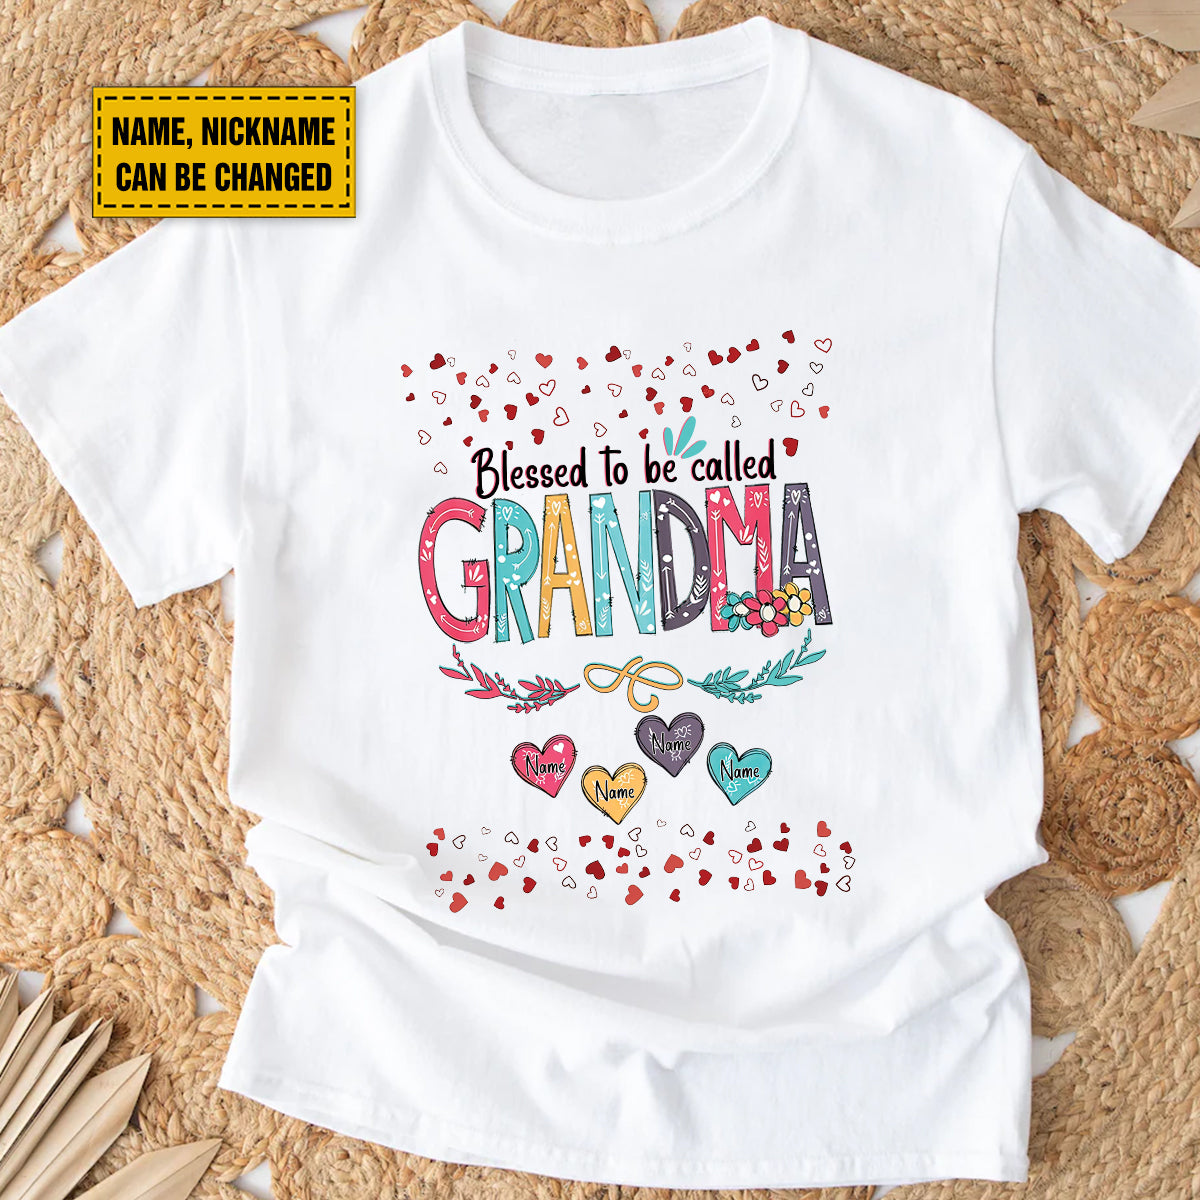 Teesdily | Grandma Personalized Kids Name Shirt, Blessed To Be Called Grandma T-Shirt, Grandmom Mothers Day Custom Gifts Unisex Tshirt Hoodie Sweatshirt Size S-5Xl / Mug 11-15Oz